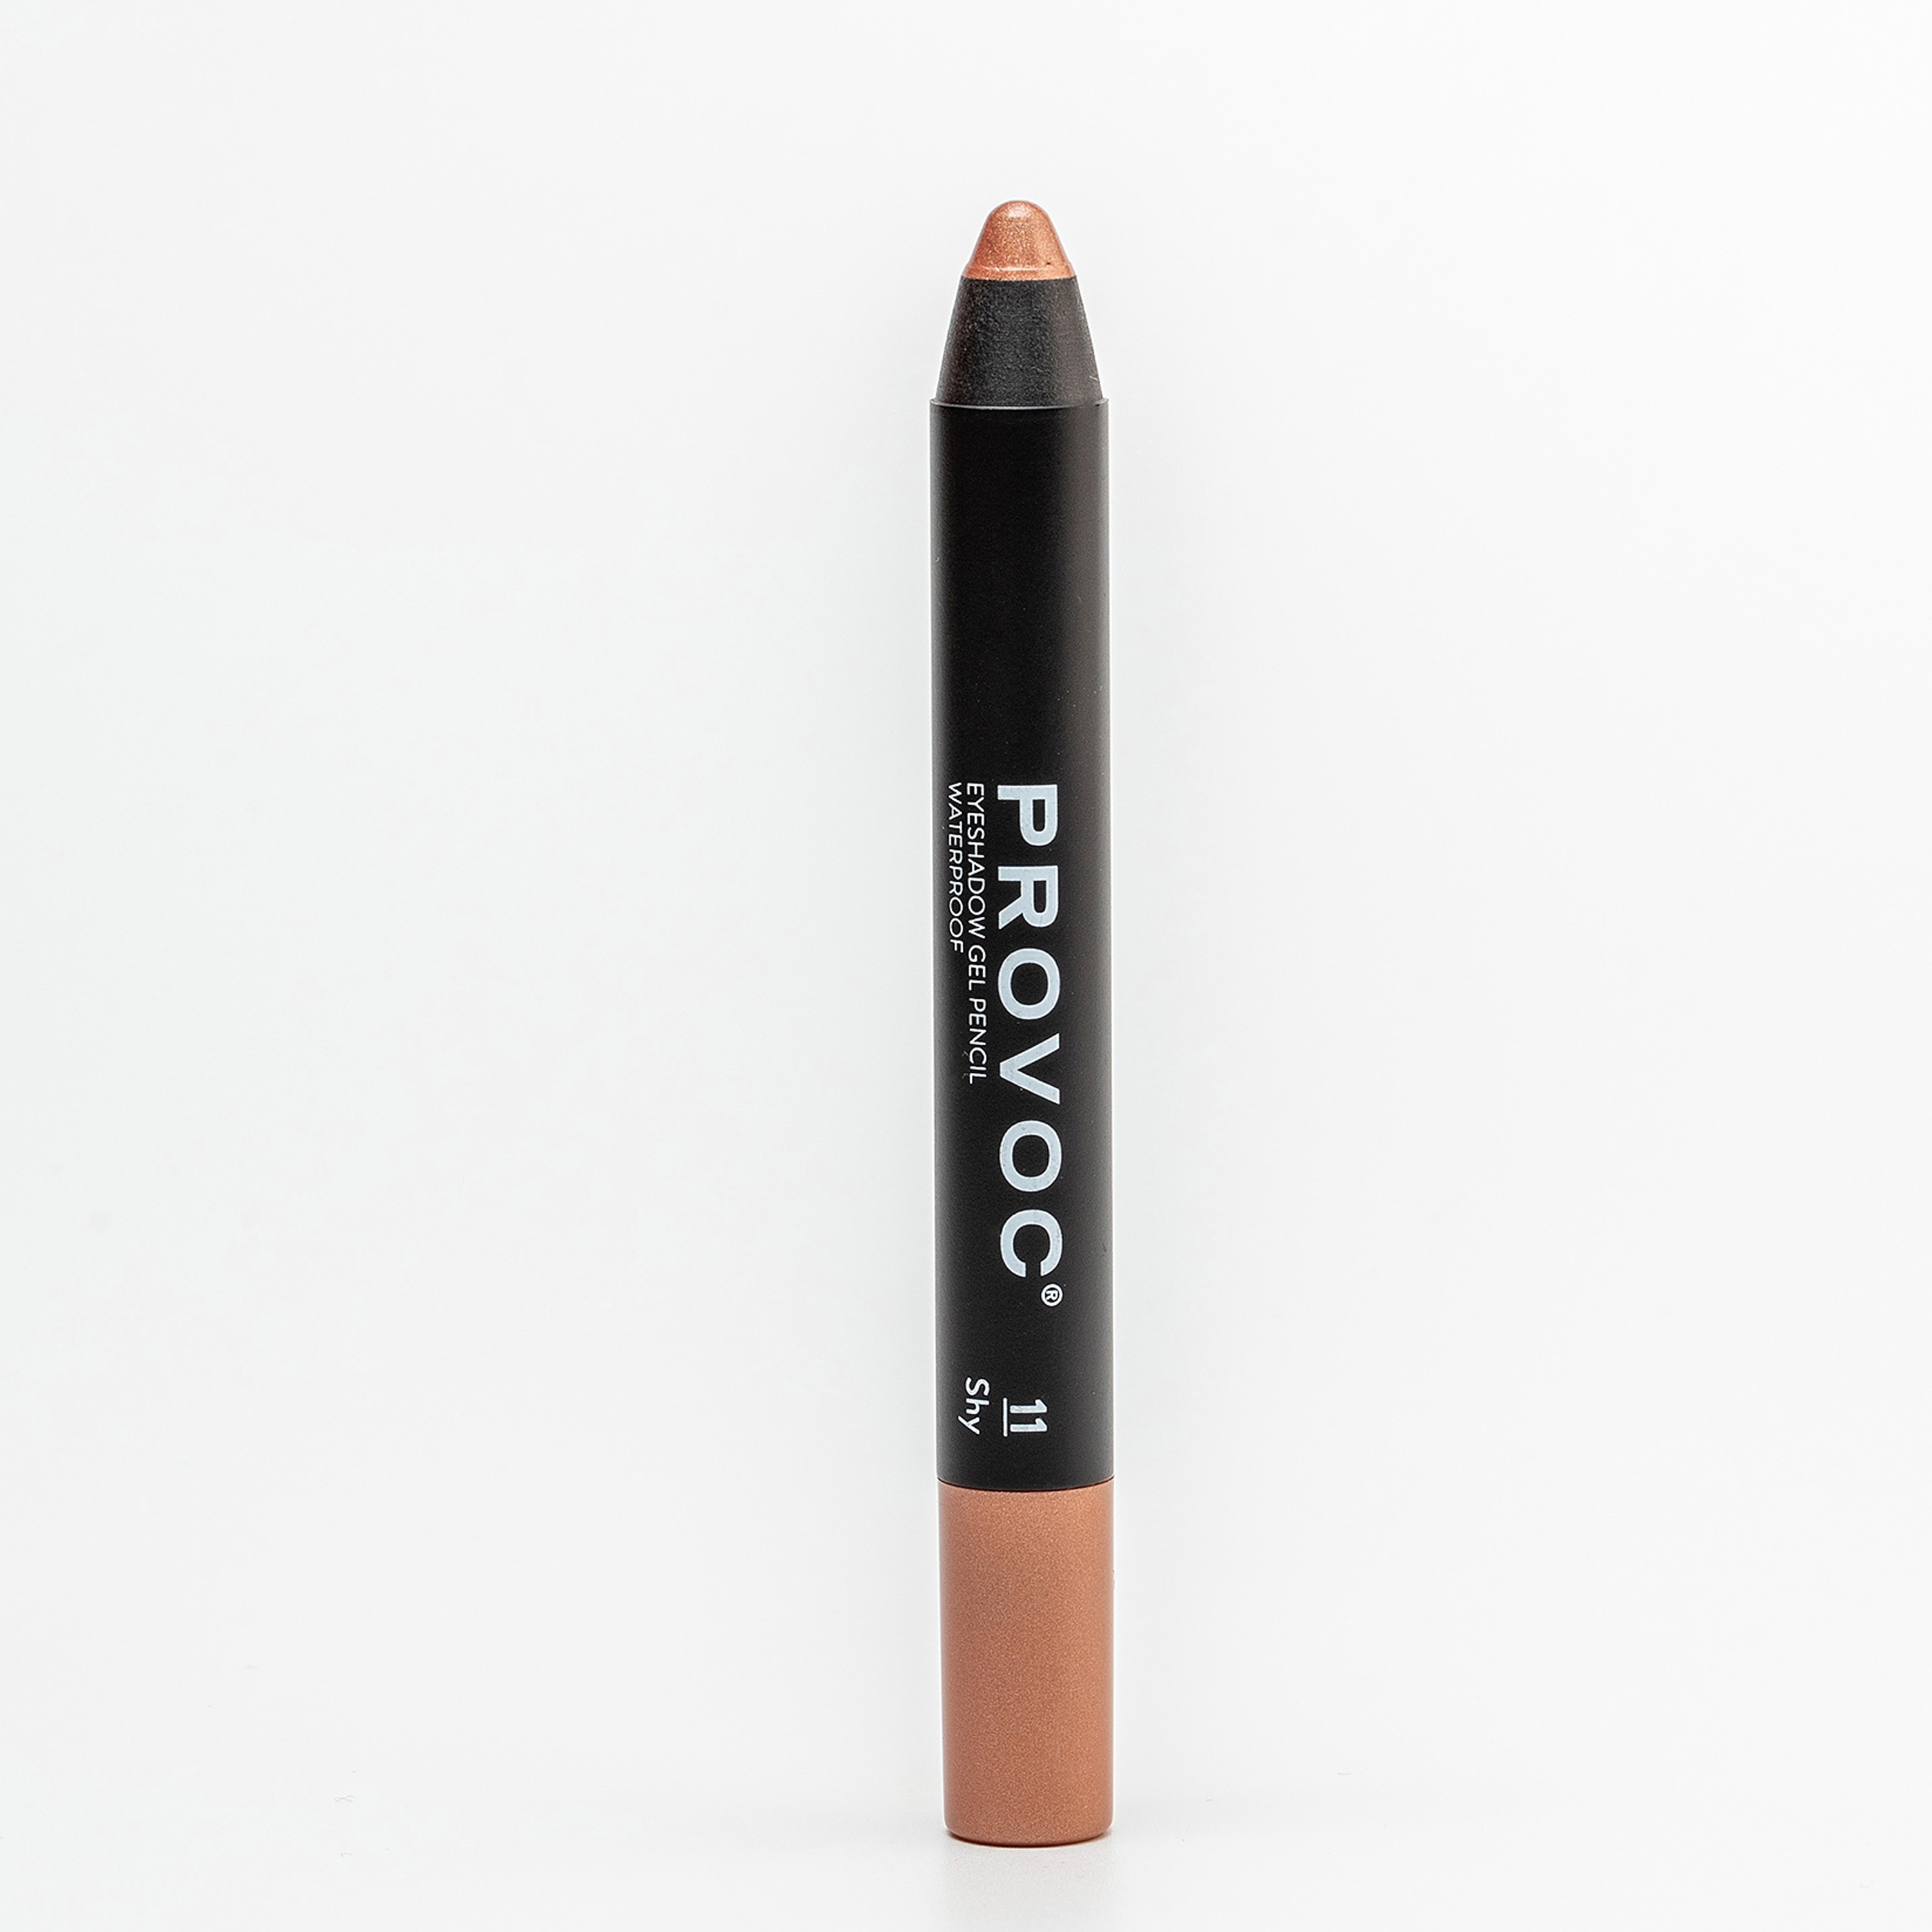 Тени-карандаш PROVOC Eyeshadow Pencil L водостойкие, шиммер 11 персиковый, 2,3 г